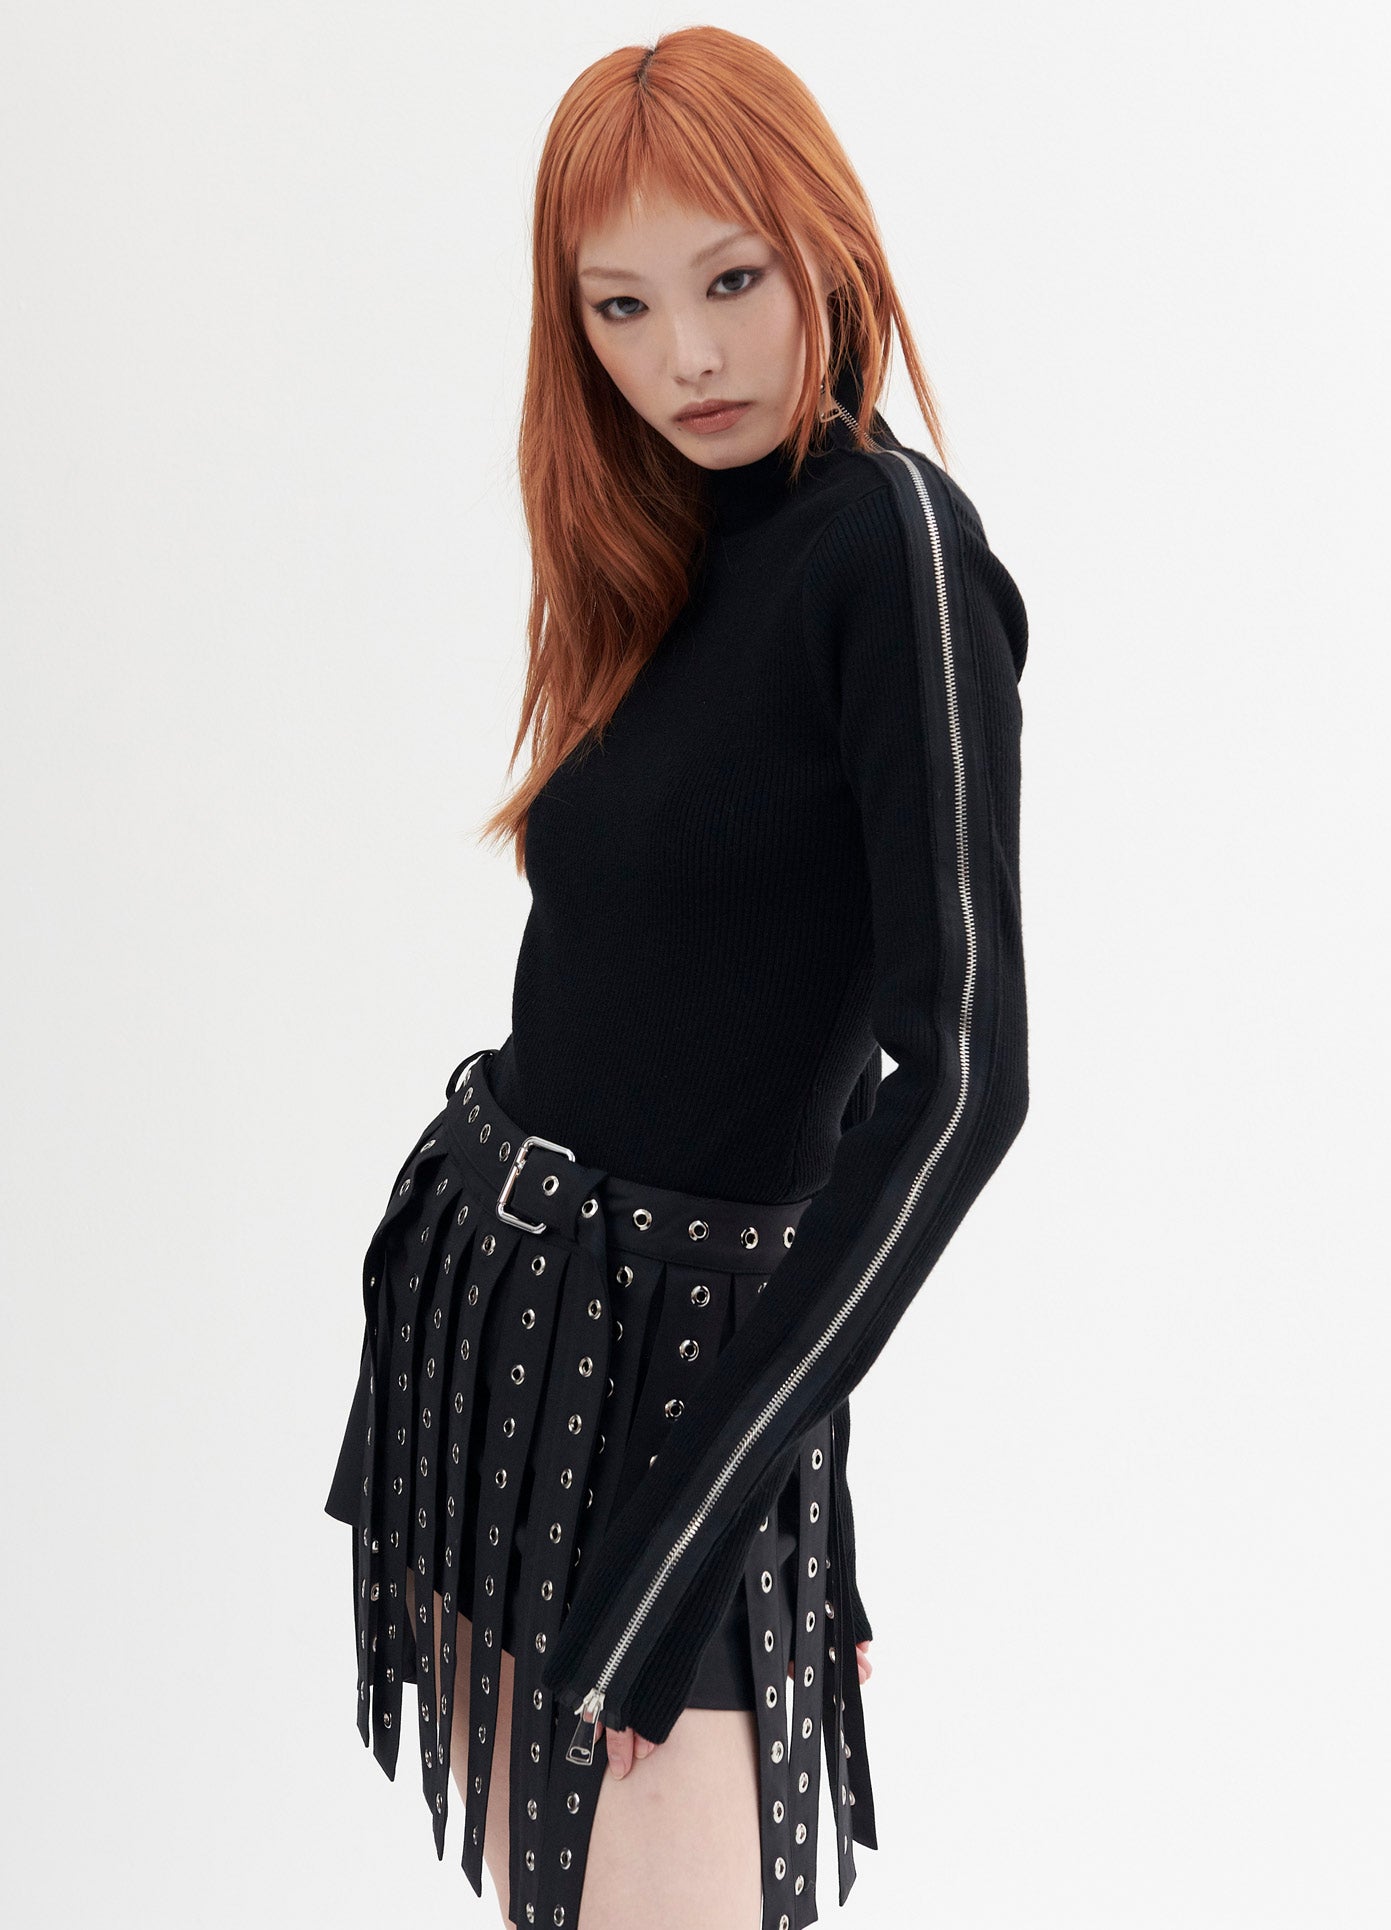 MONSE Zipper Detail Turtleneck Sweater in Black on Model Side View